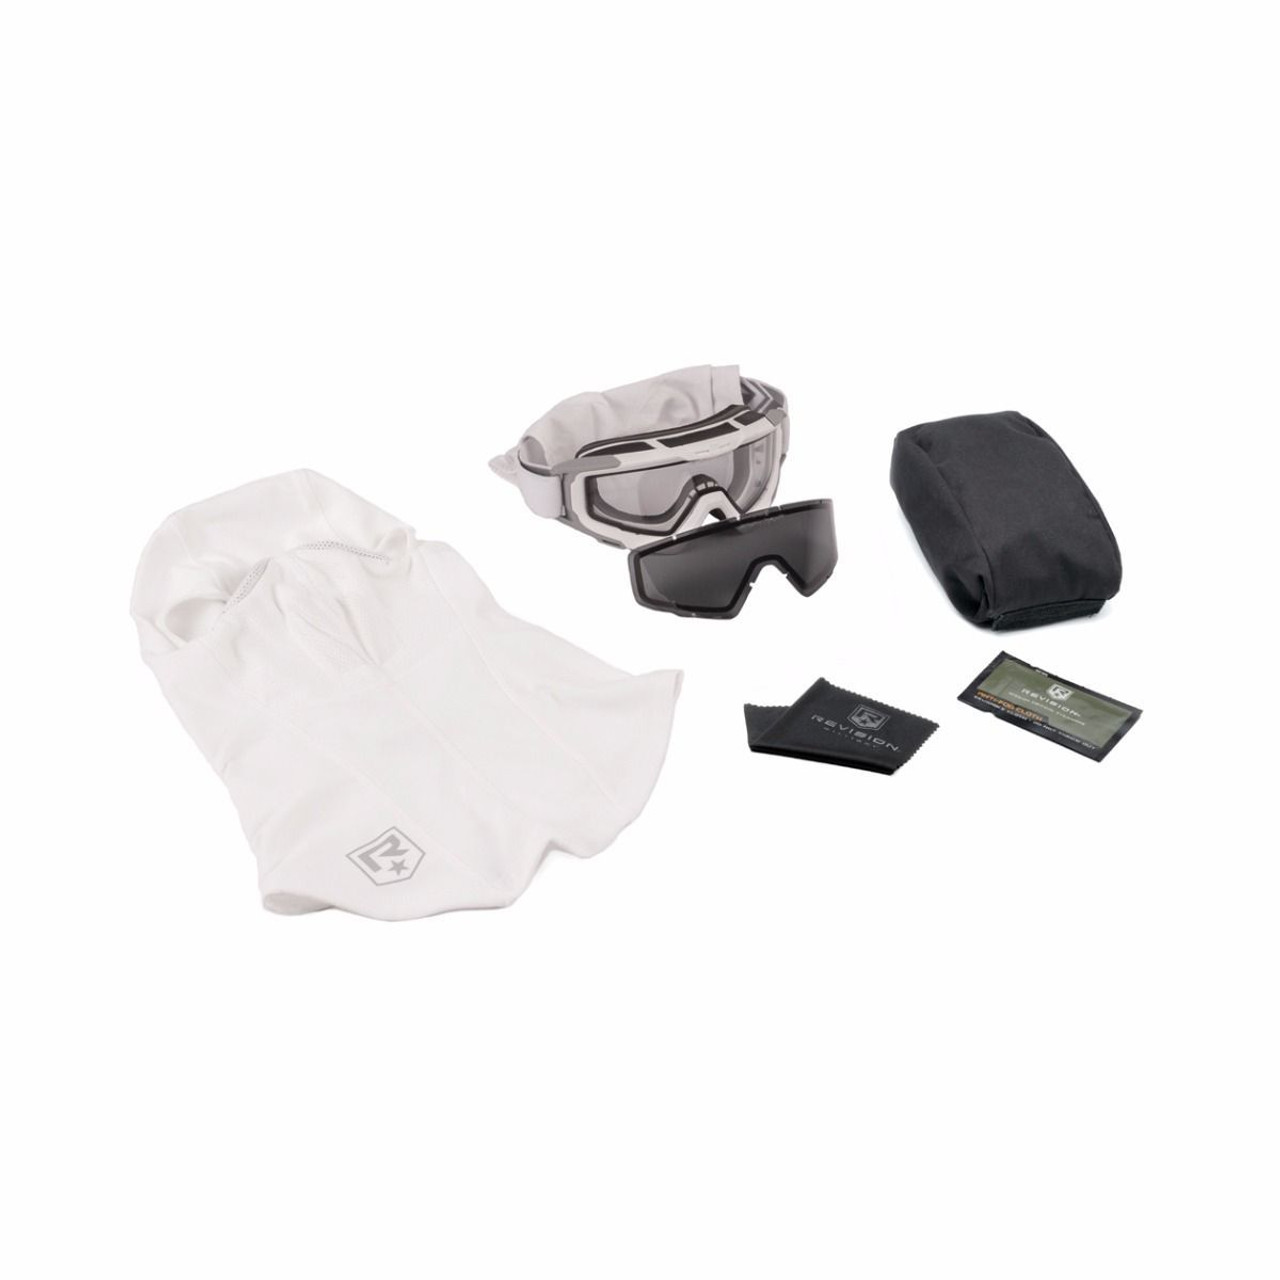 Revisione del sistema di occhiali militari Snowhawk: kit militare americano  bianco con passamontagna